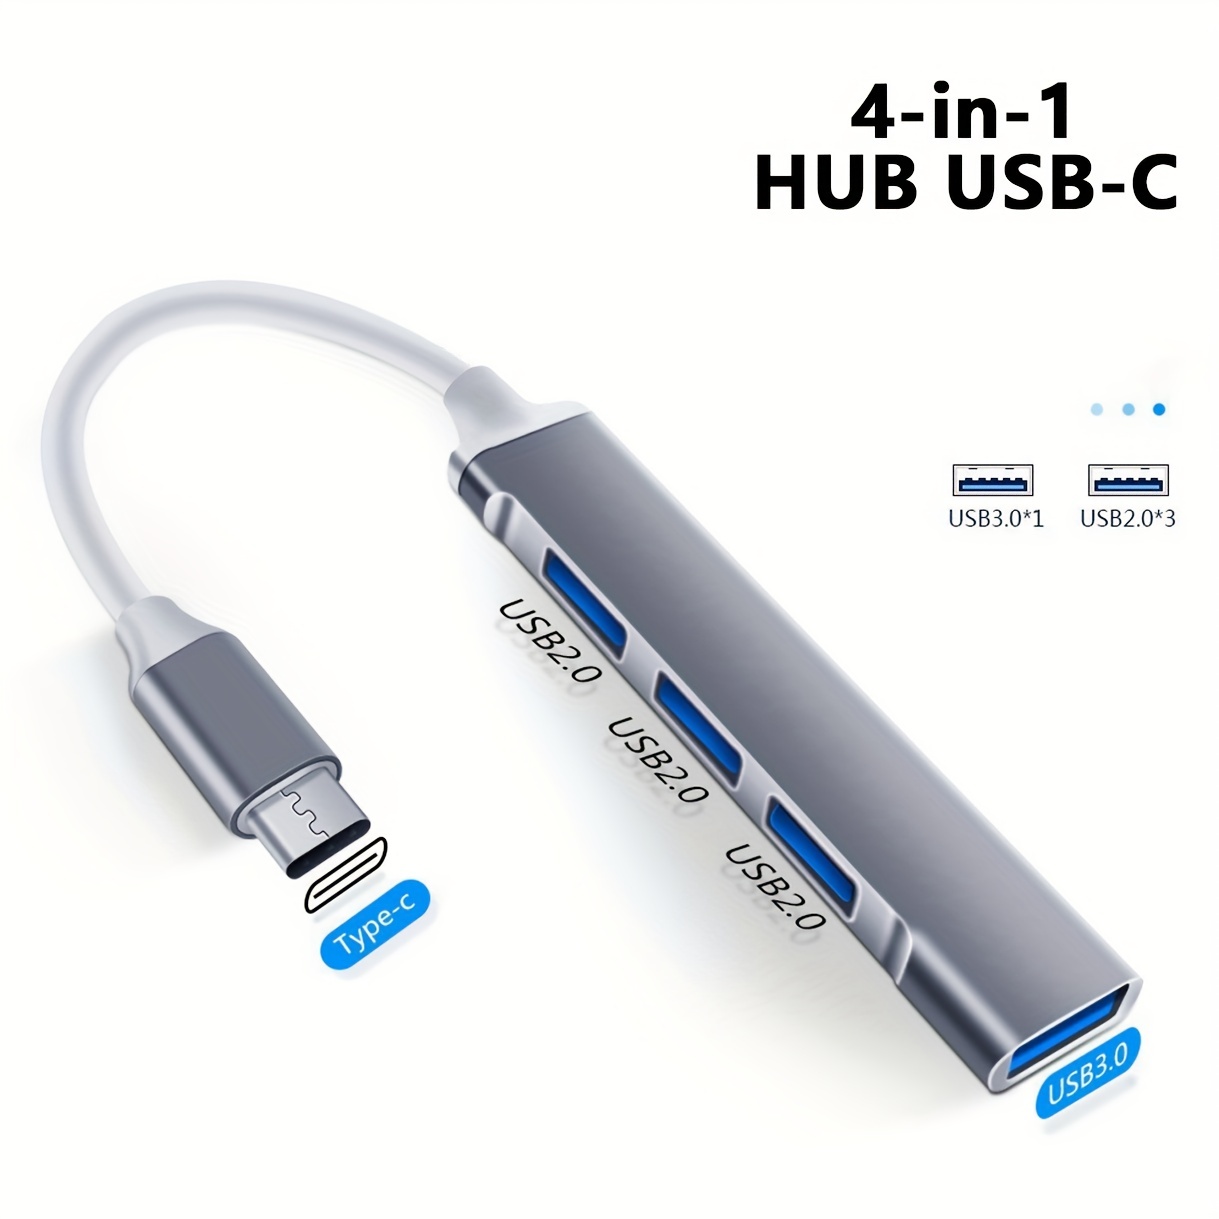 Wowssyo USB Hub USB 3.0 Splitter 4-in-1 USB Adapter USB 3.0